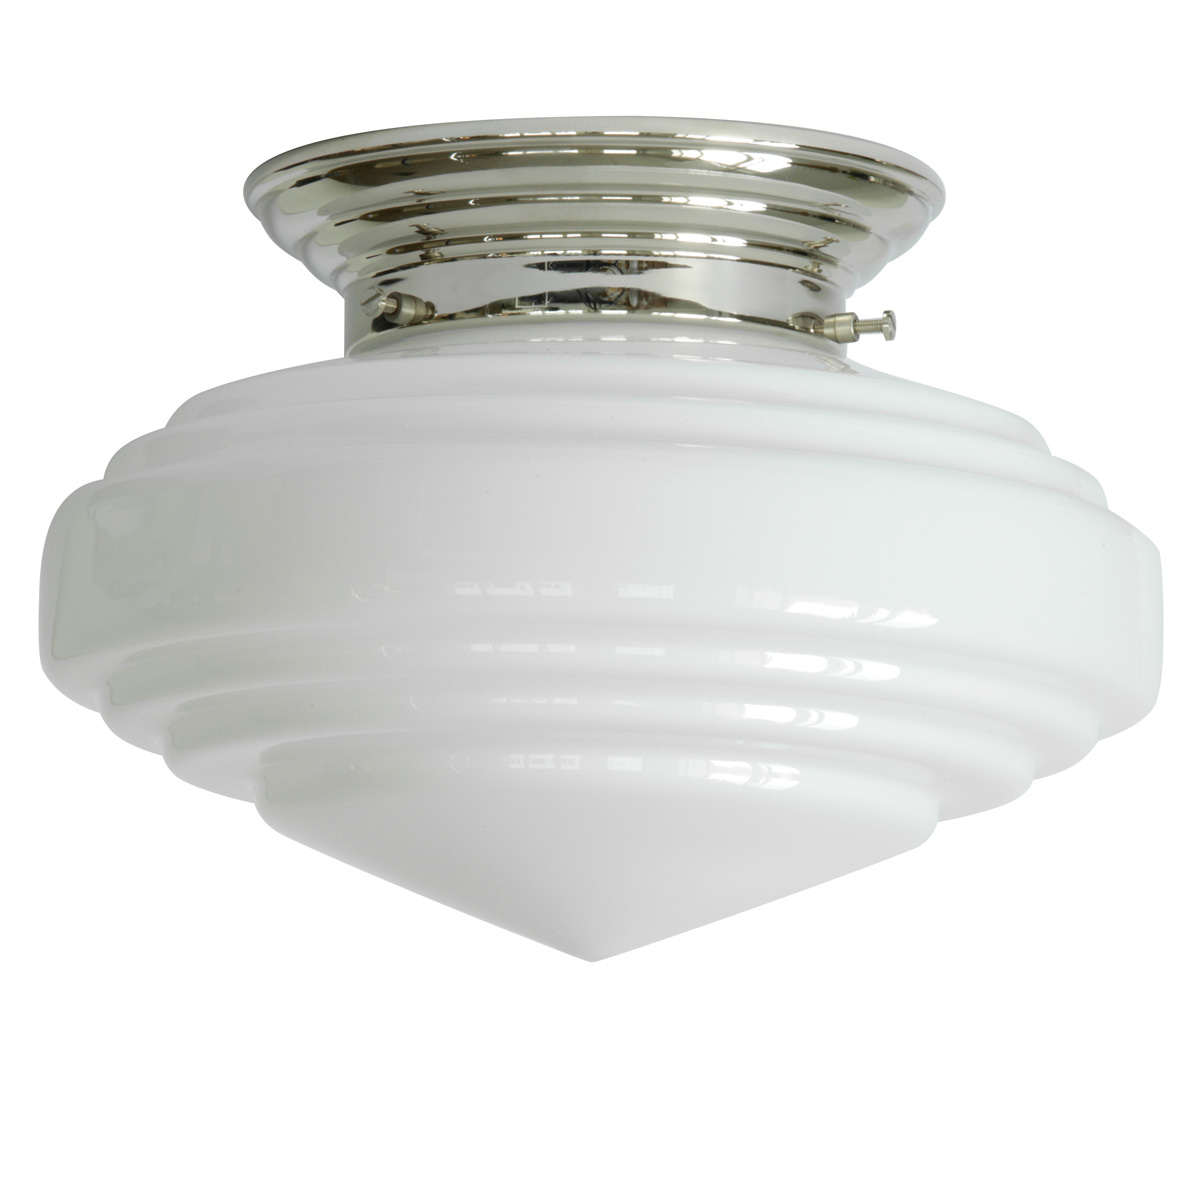 Messing-Deckenlampe mit spitzem Stufenglas Ø 30 cm: Art déco-Deckenleuchte mit Opalglas, Messing glanzvernickelt